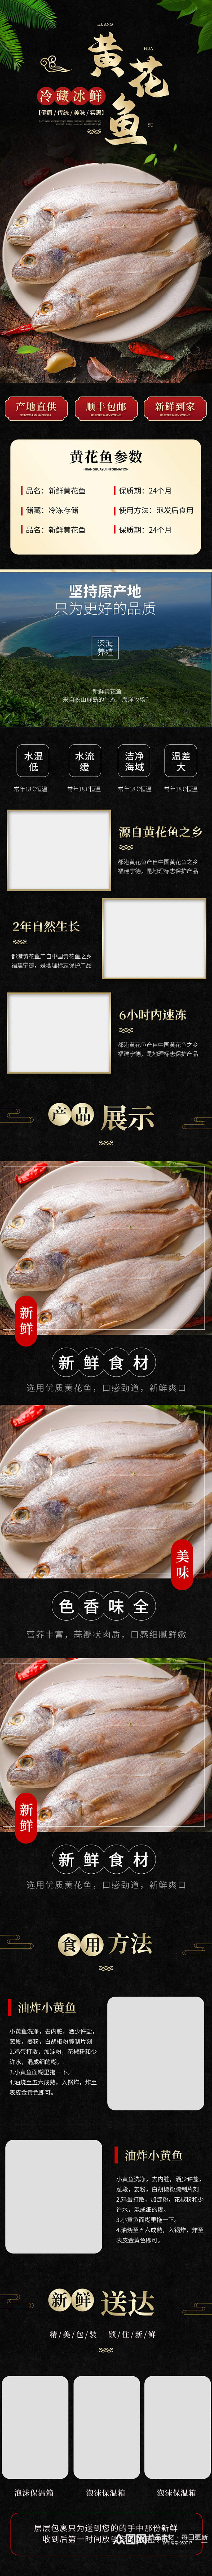 海鲜生鲜美食简约黄花鱼促销详情页模板素材